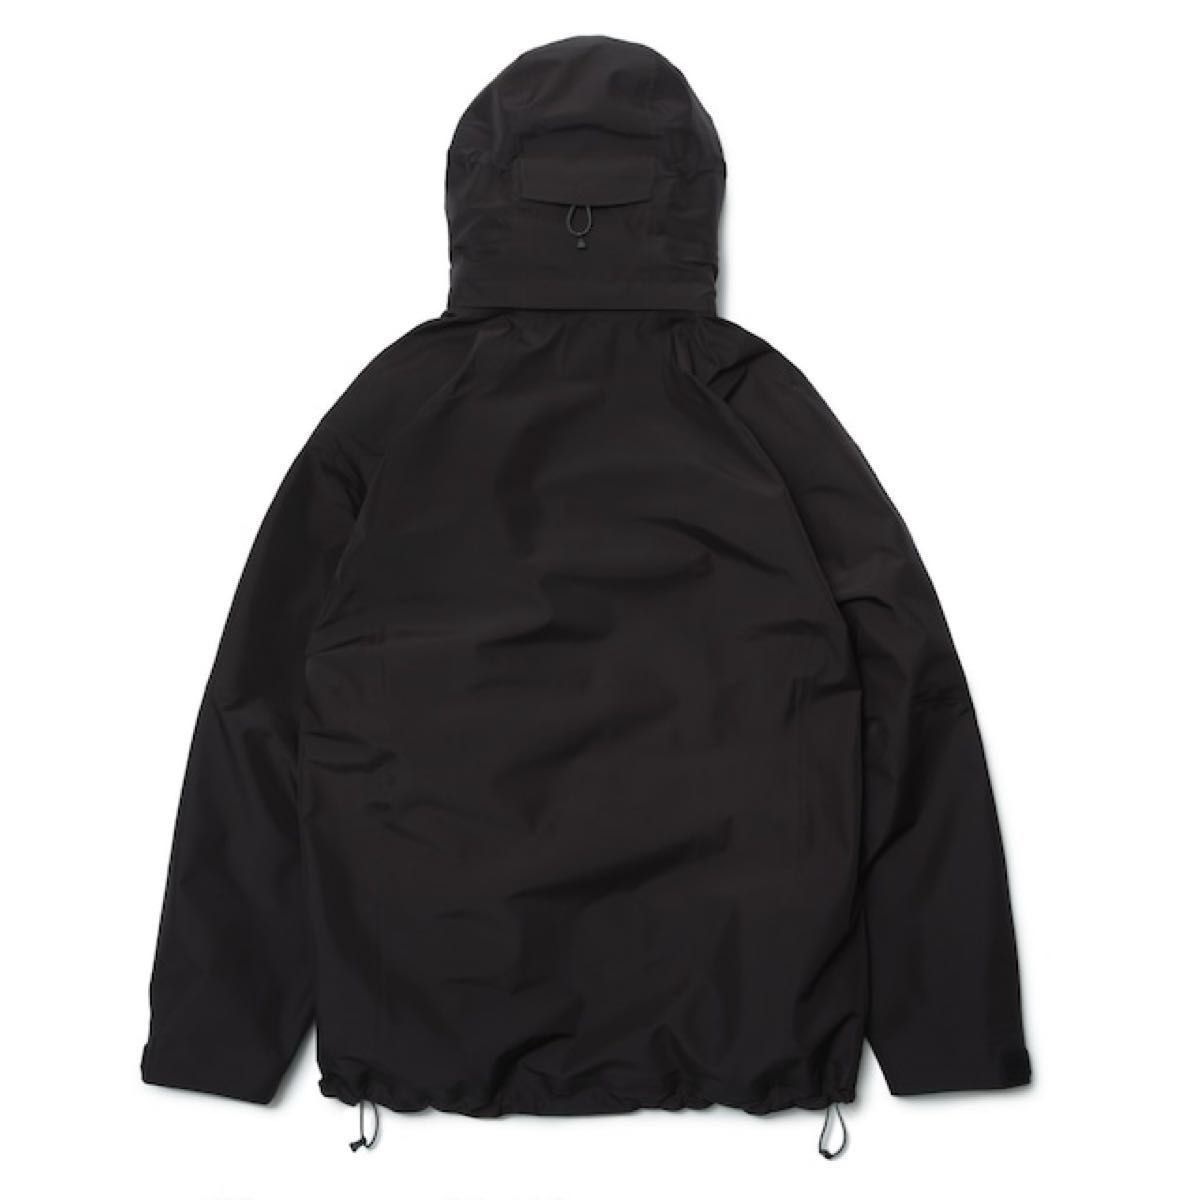 【新品】Alwayth all weather proof shell jacket by AKAD - BLACK Mサイズ